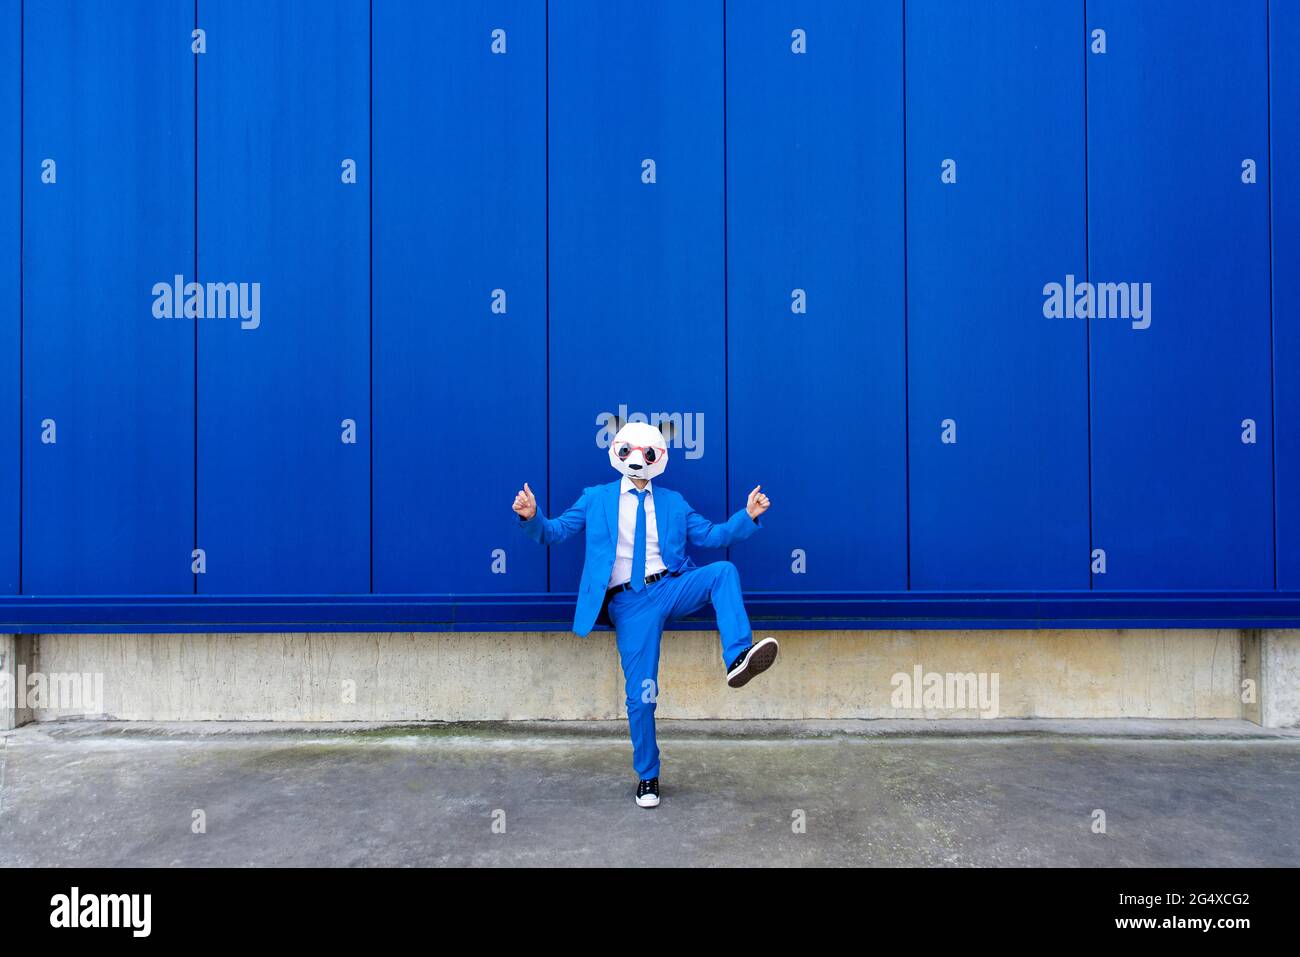 Homme portant un costume bleu vif et un masque de panda debout sur une jambe contre un mur bleu Banque D'Images